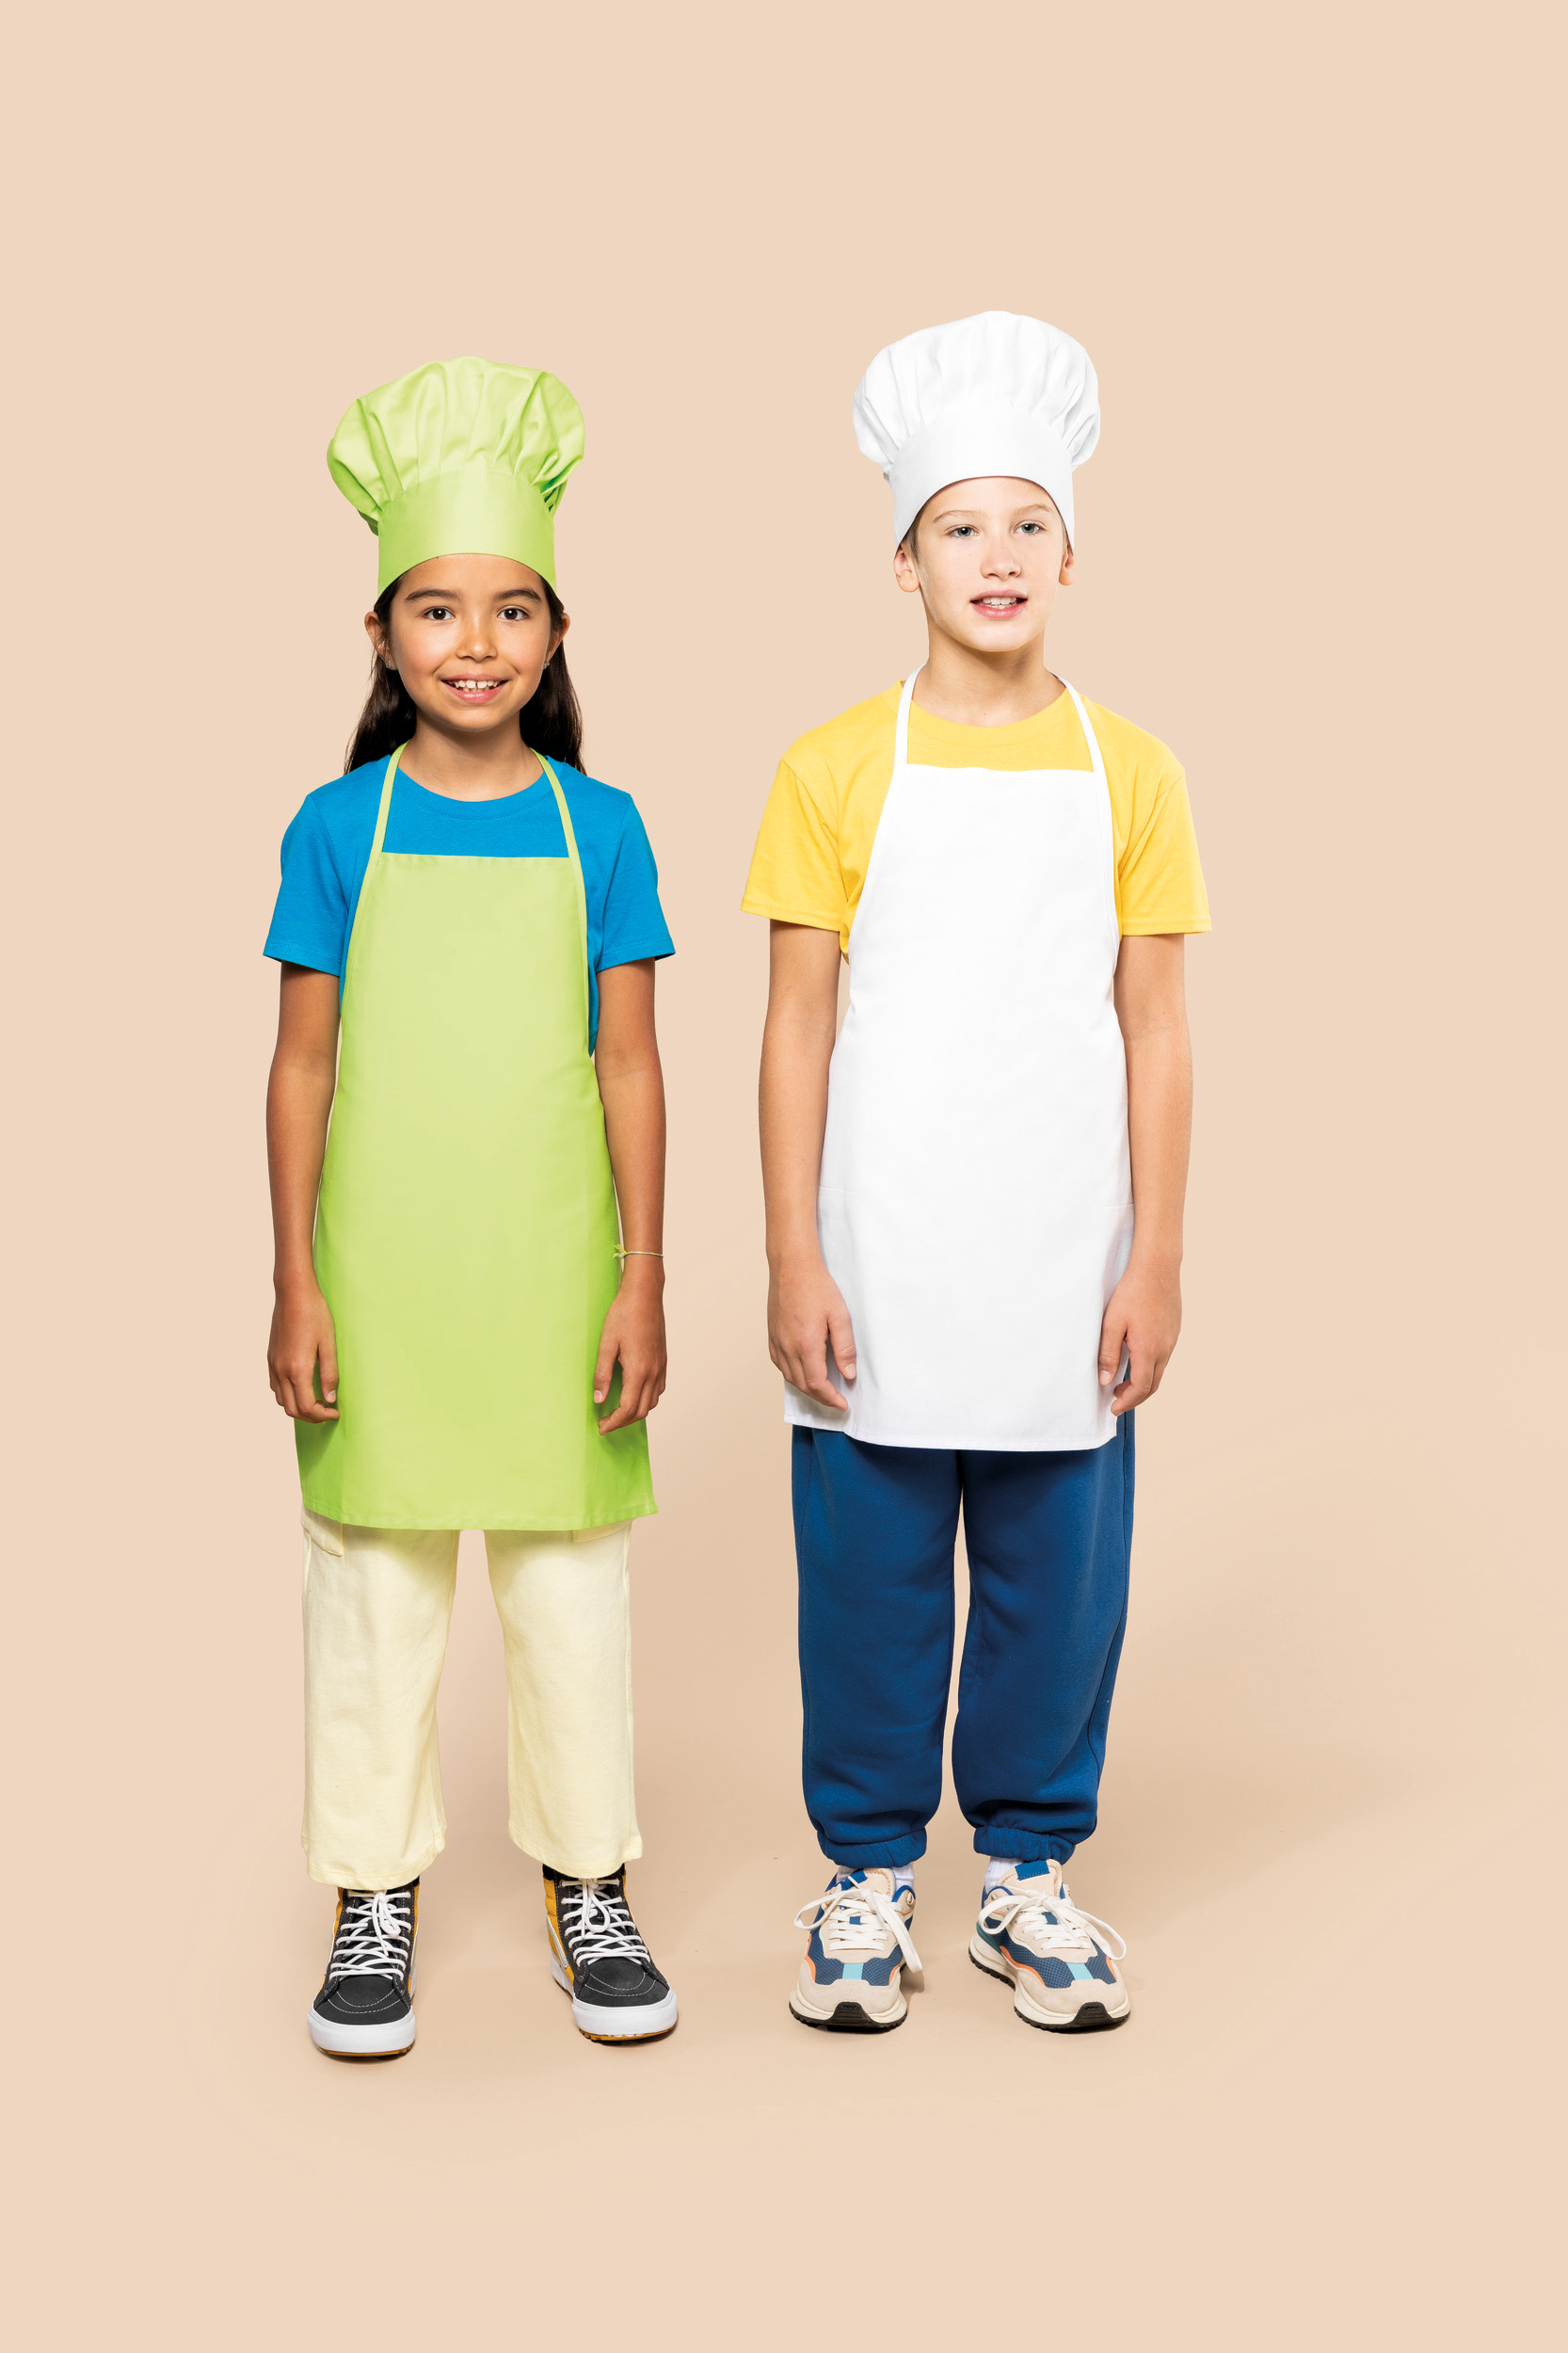 k884 - chefkok set voor kinderen ontwerpen en bedrukken (schort + koksmuts) -